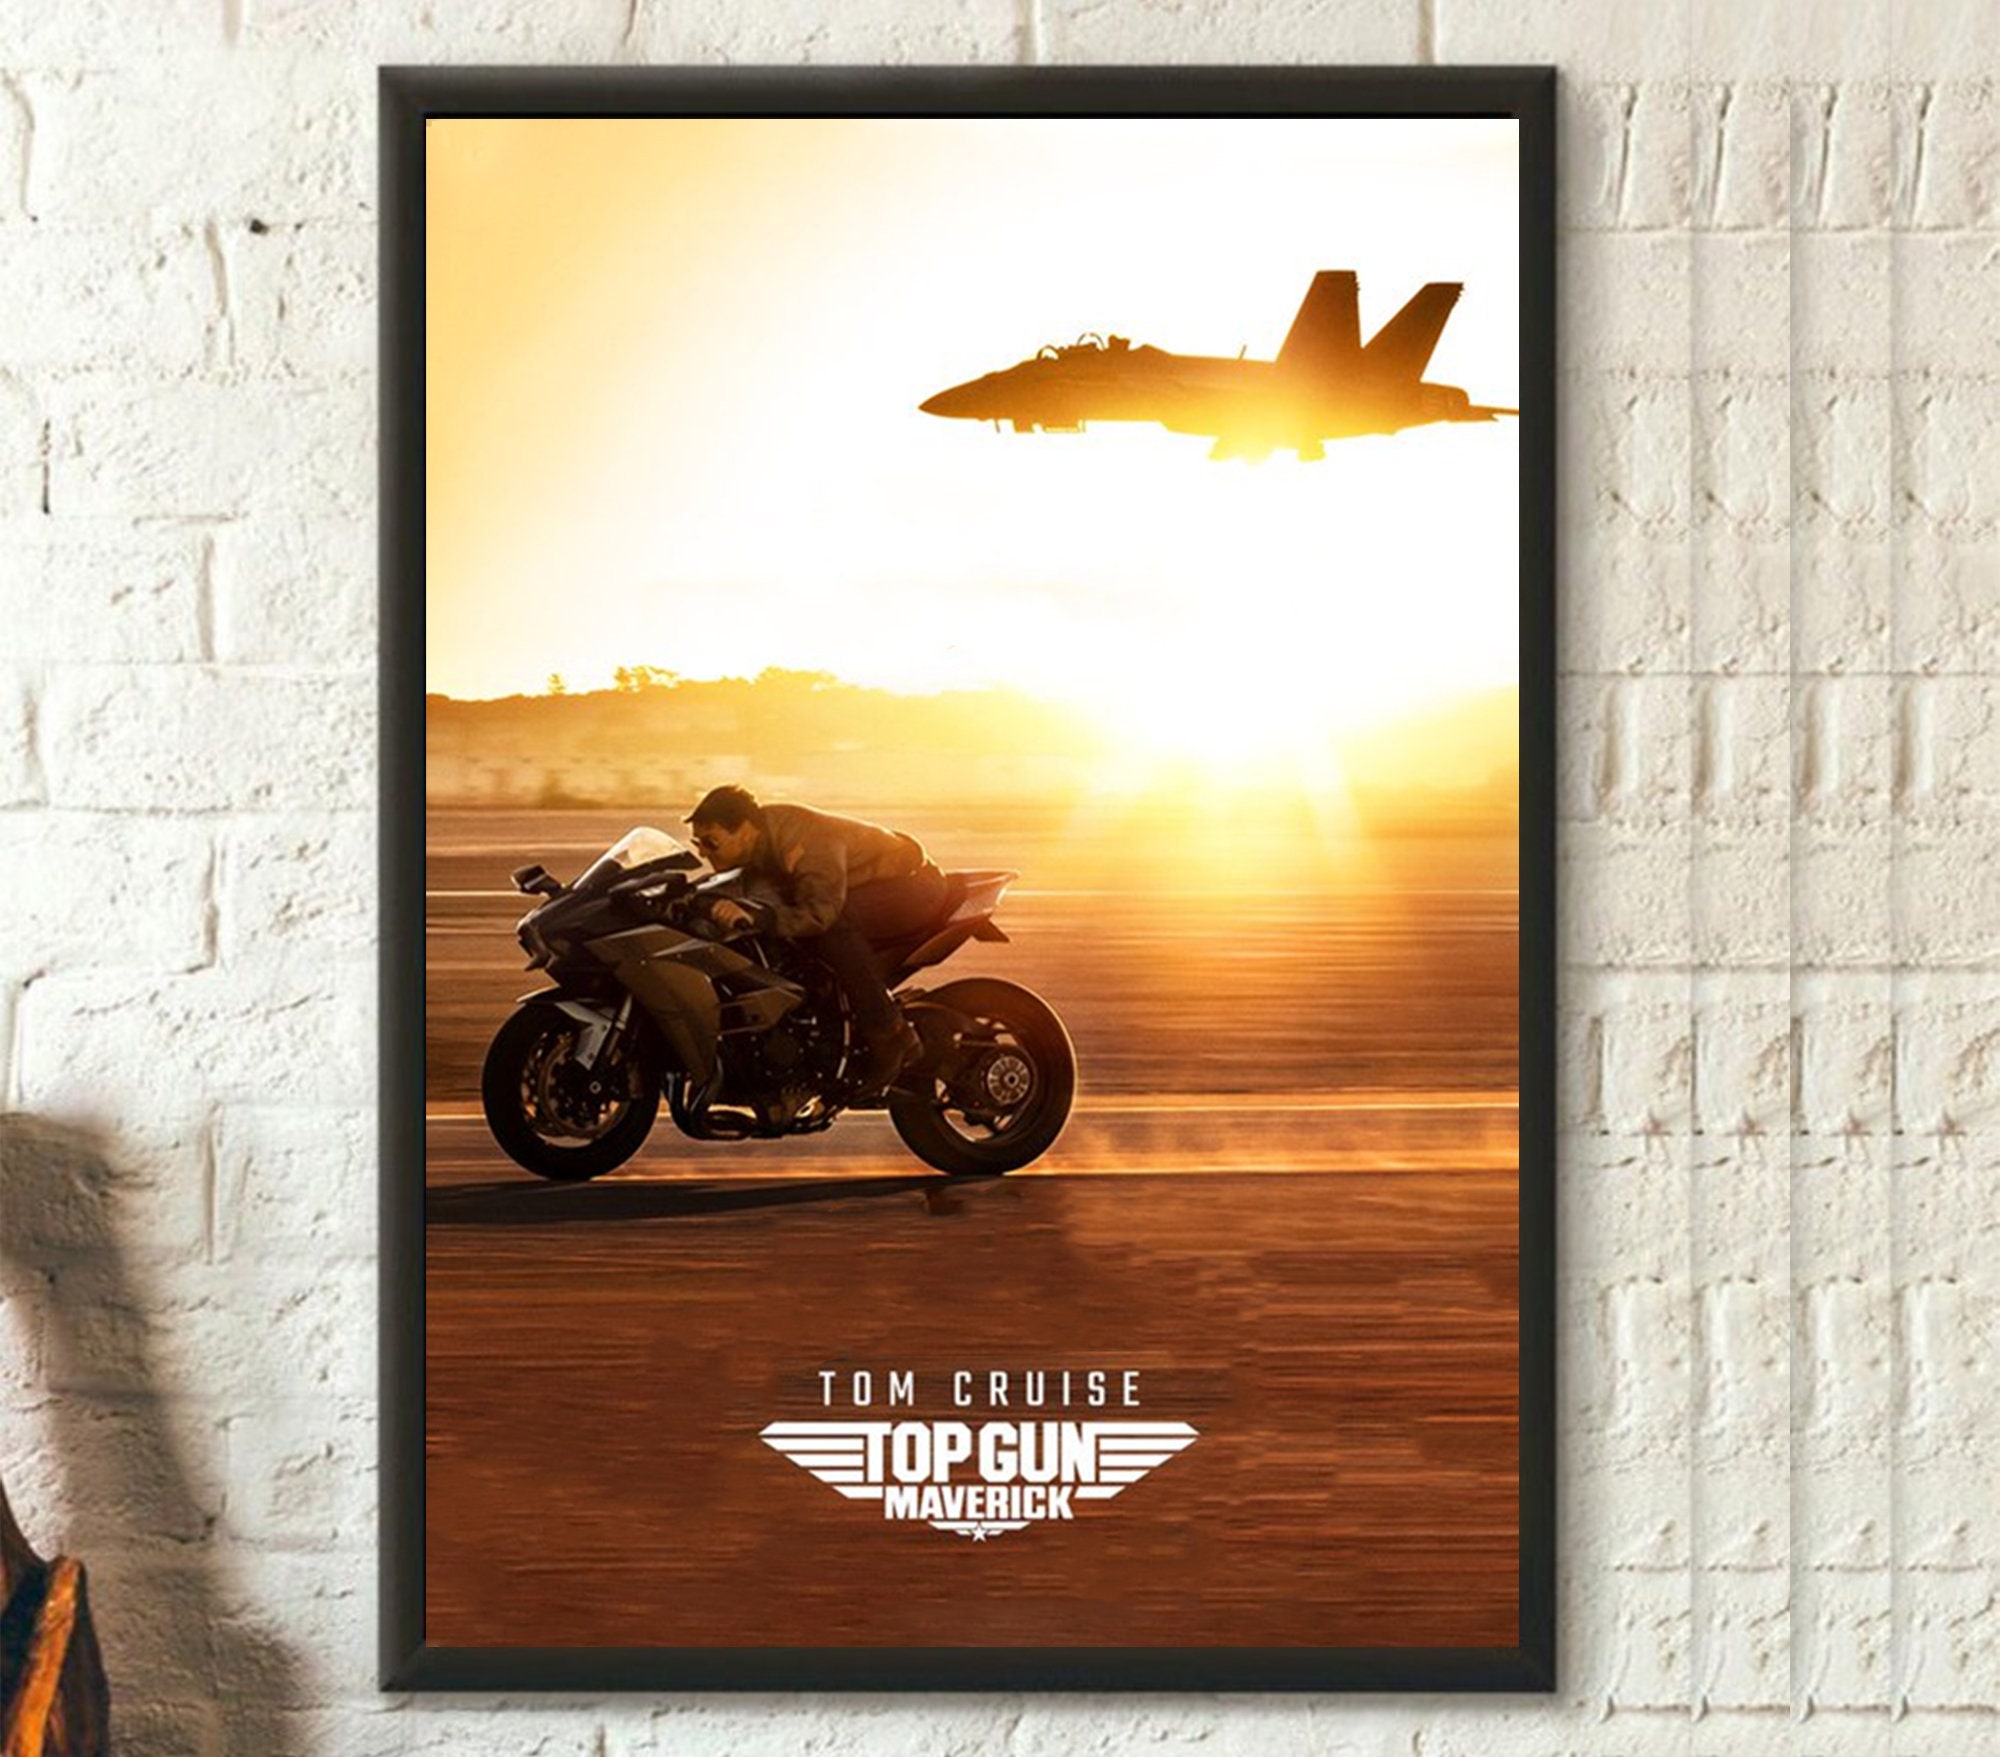 Tom Cruise Poster, Top Gun: Maverick 2022 poster, Top Gun Maverick Movies Poster